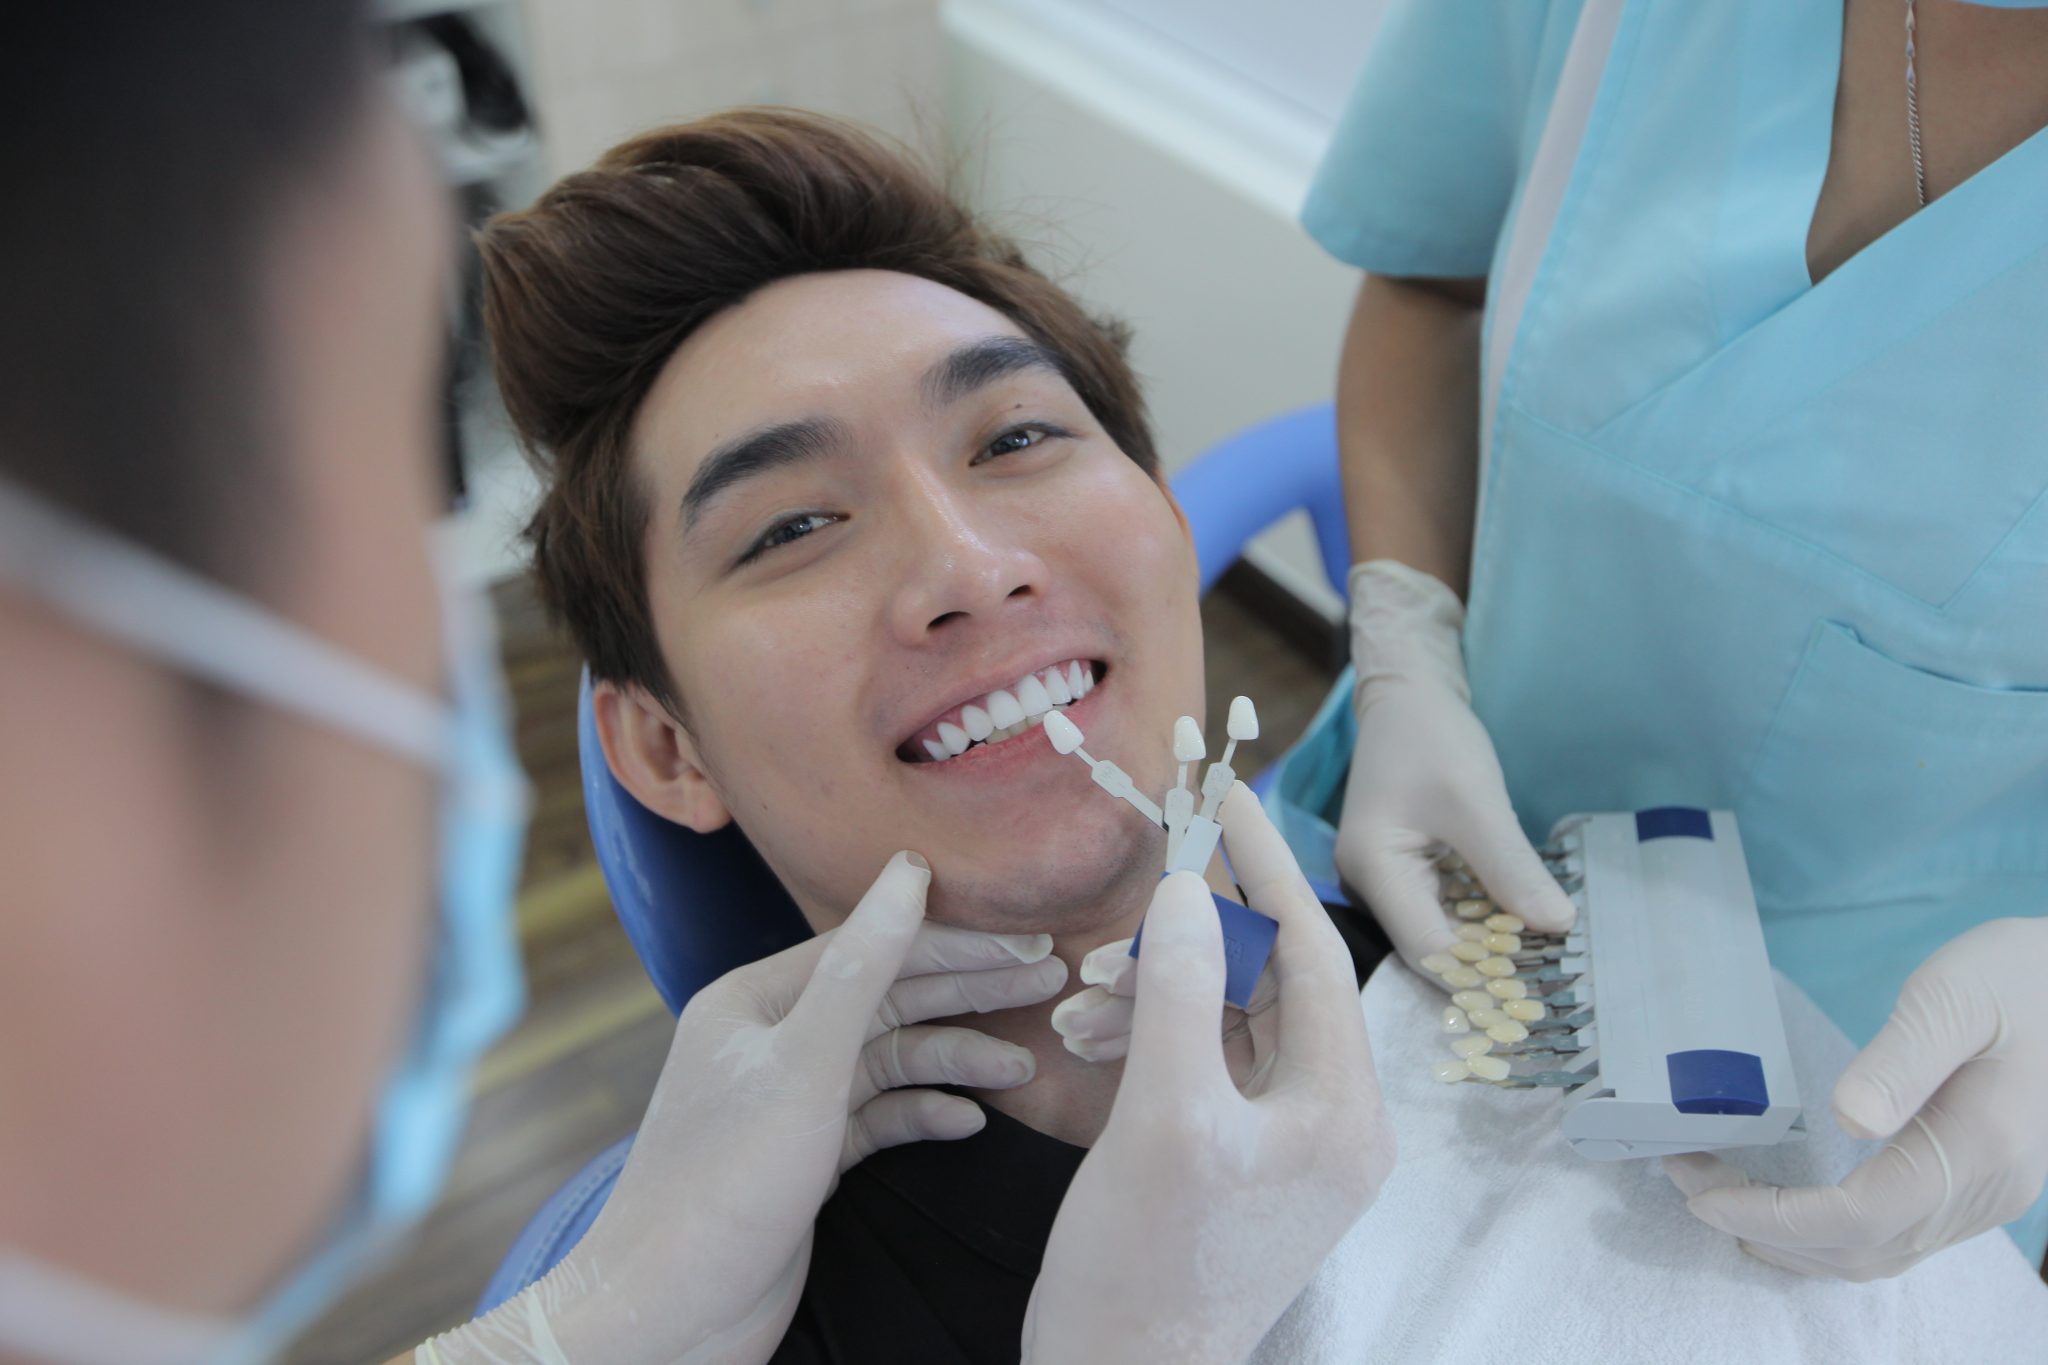 Nha khoa Kim có đa dạng các dịch vụ chăm sóc răng cơ bản đến nâng cao